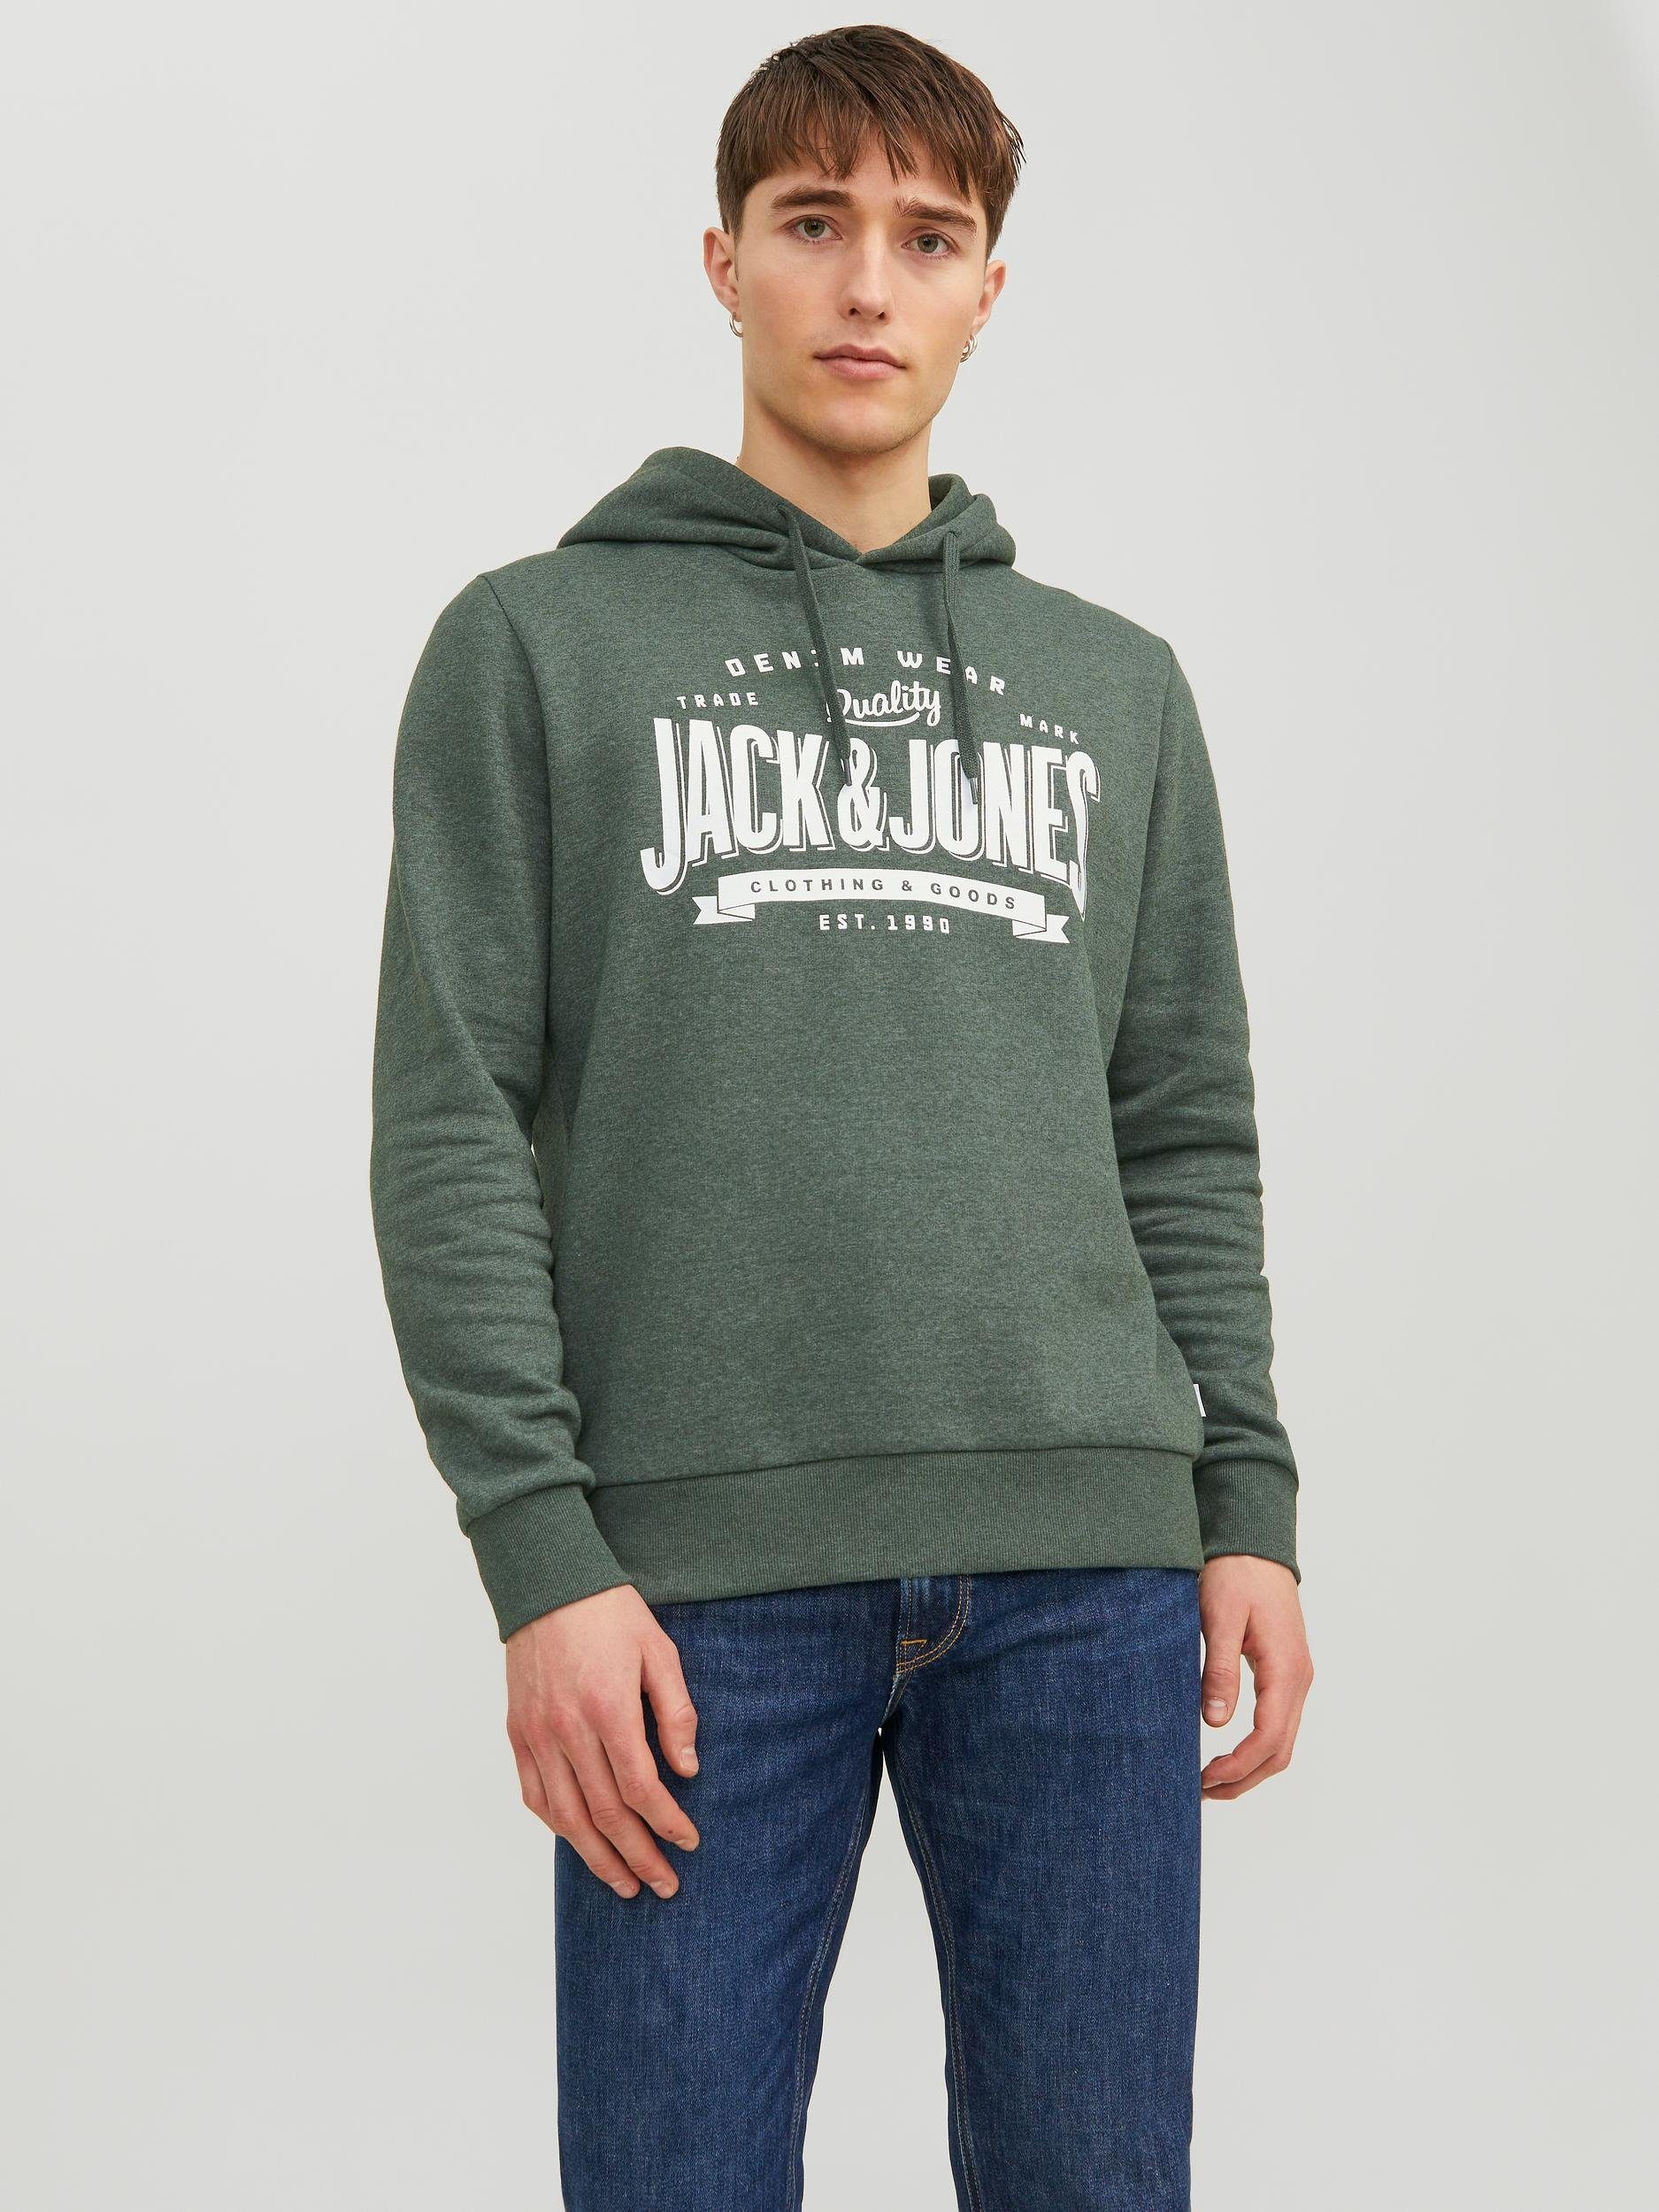 & Jack Jones Mountain View/M Sweatshirt